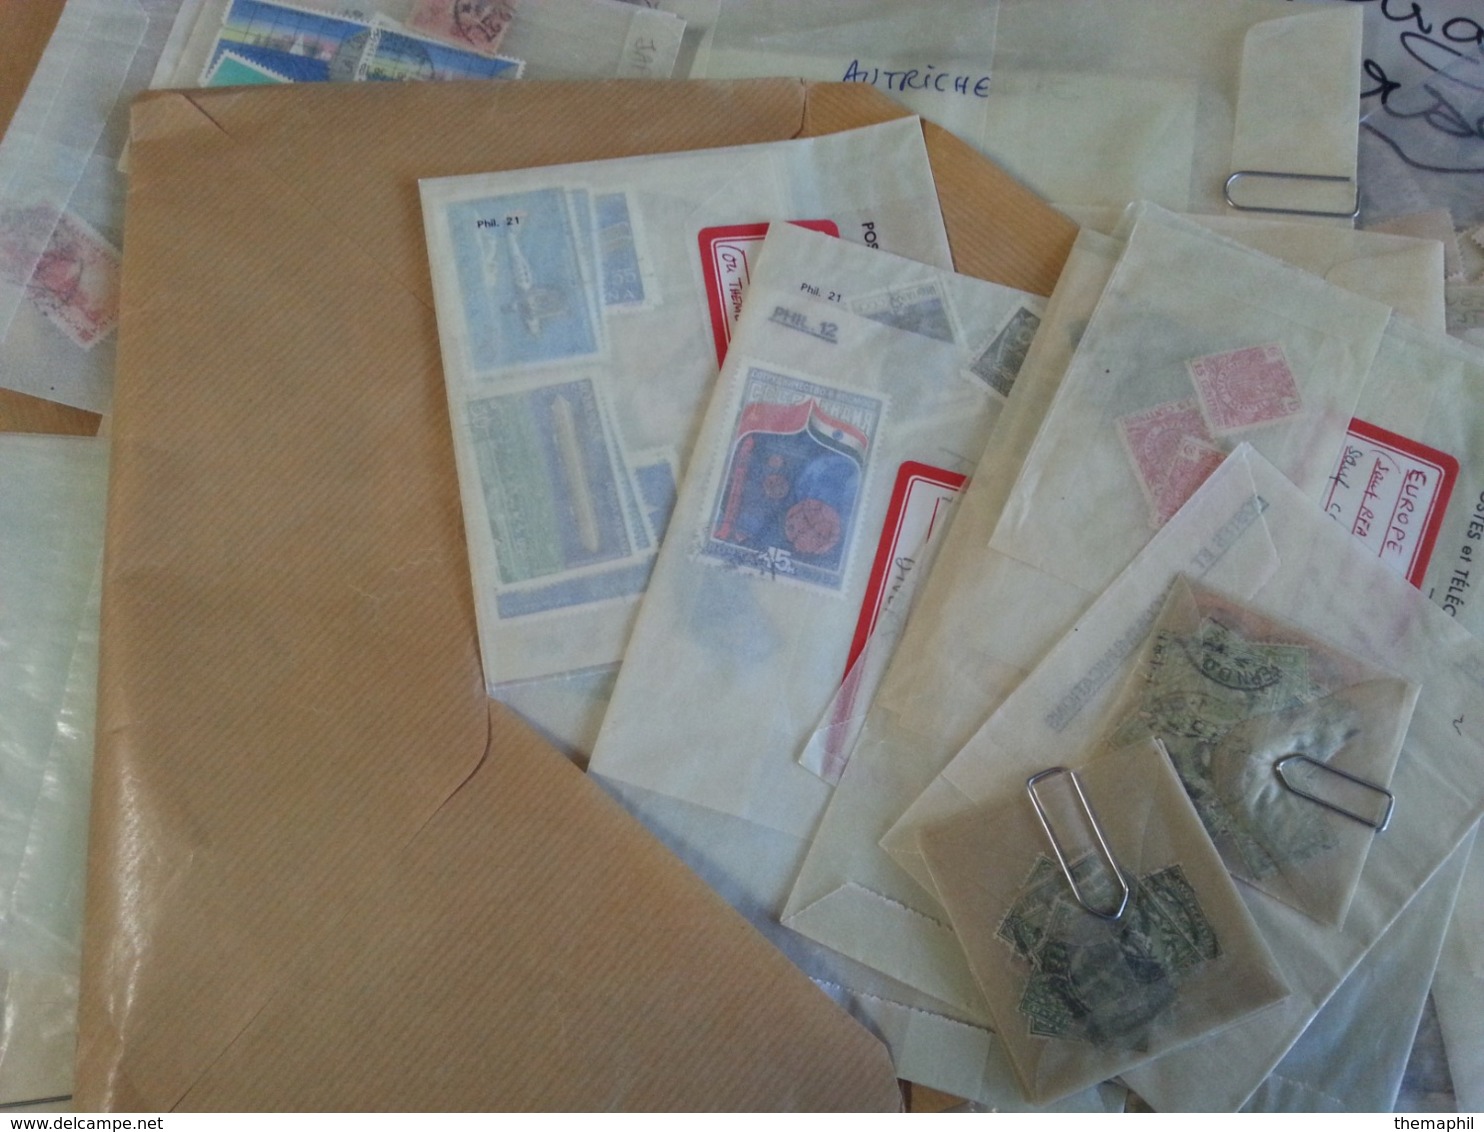 lot n° T 821 VRAC de plusieurs dizaines de milliers de timbres décollés, classés dans des enveloppe. tous pays obl.